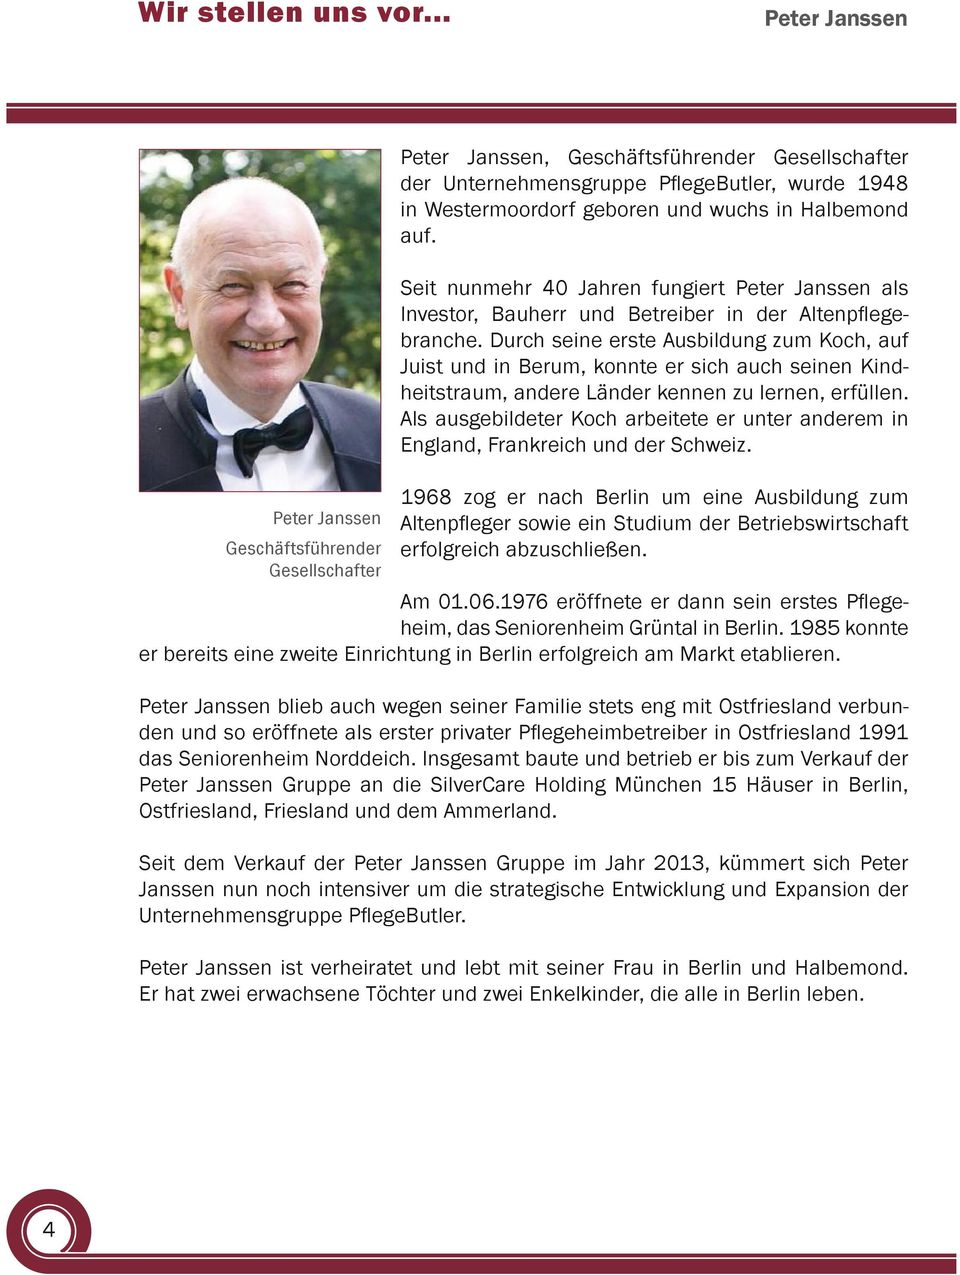 in Halbemond auf. Seit nunmehr 40 Jahren fungiert Peter Janssen als Investor, Bauherr und Betreiber in der Altenpflegebranche.